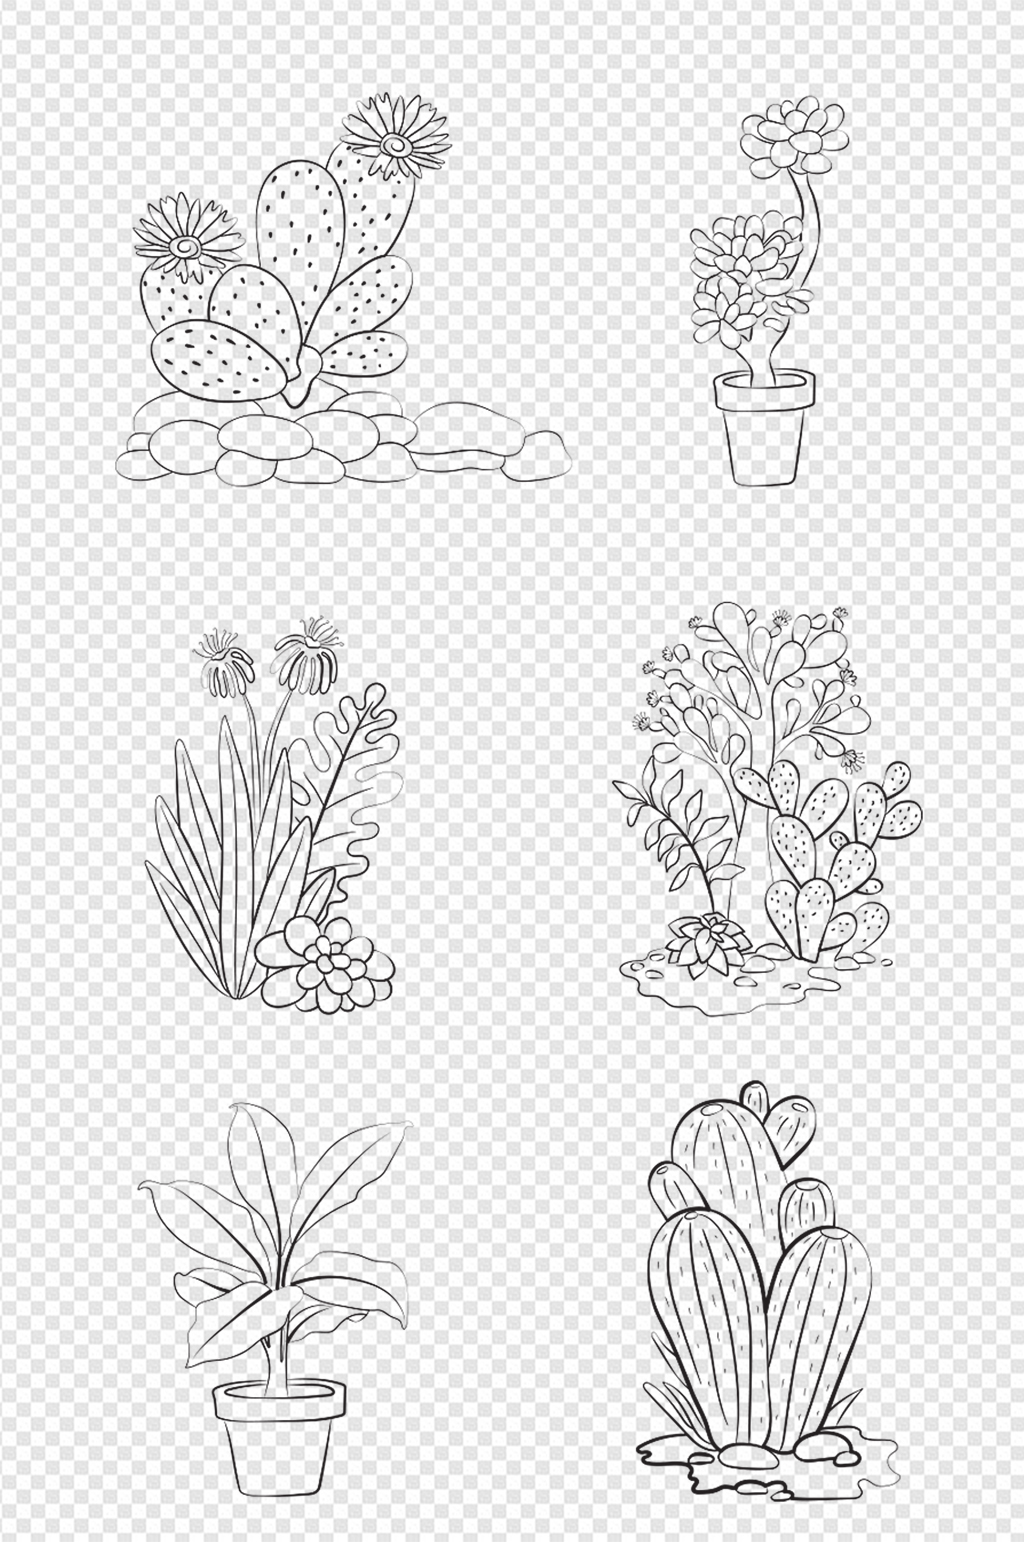 植物图画简单漂亮手绘图片